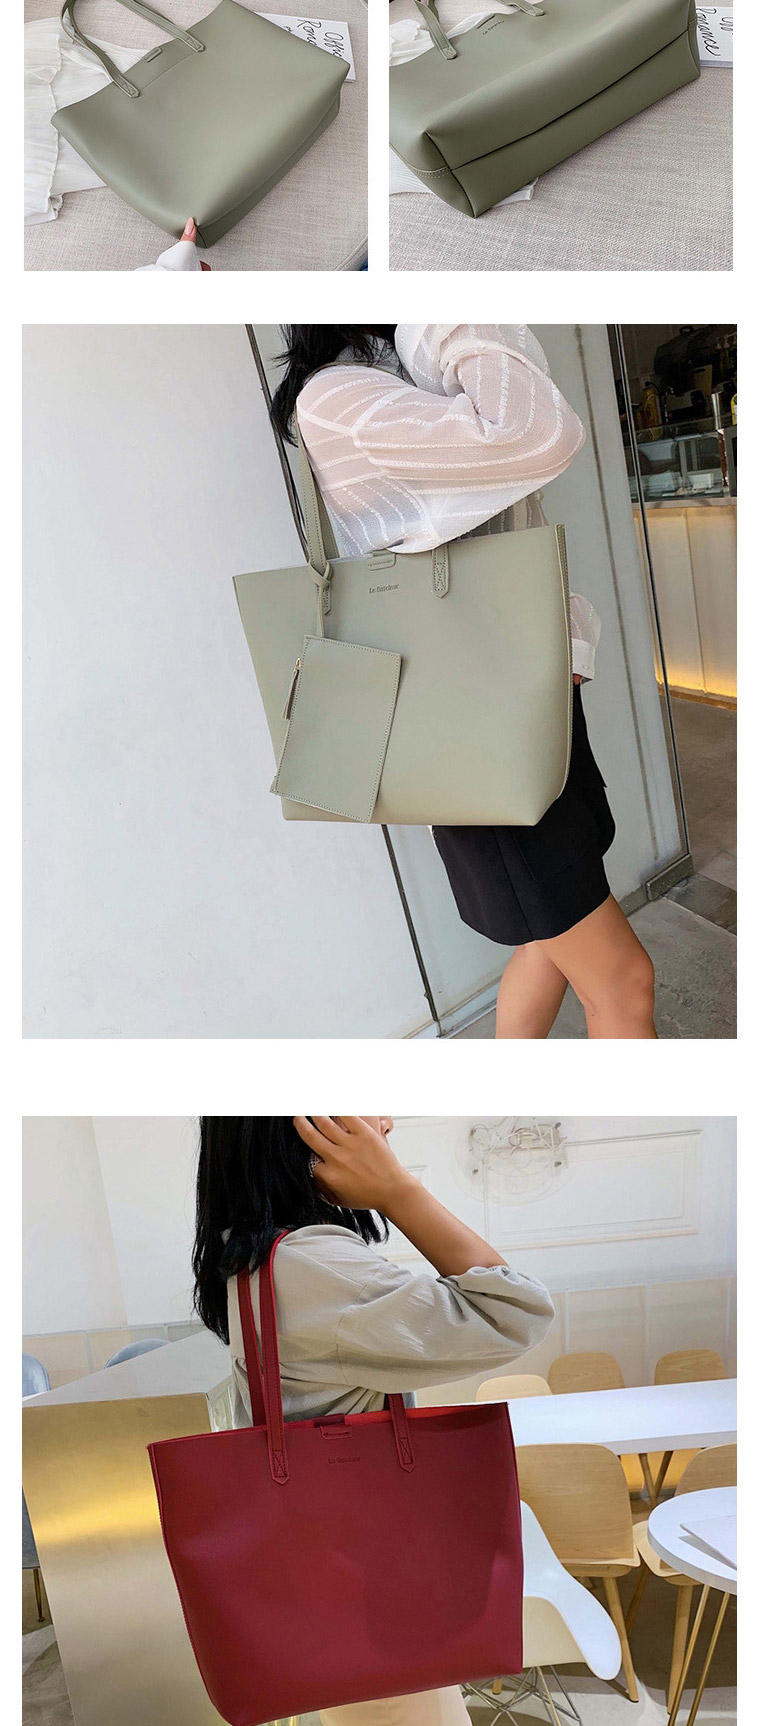 Fashion Green One-shoulder Portable Messenger Bag,Messenger bags